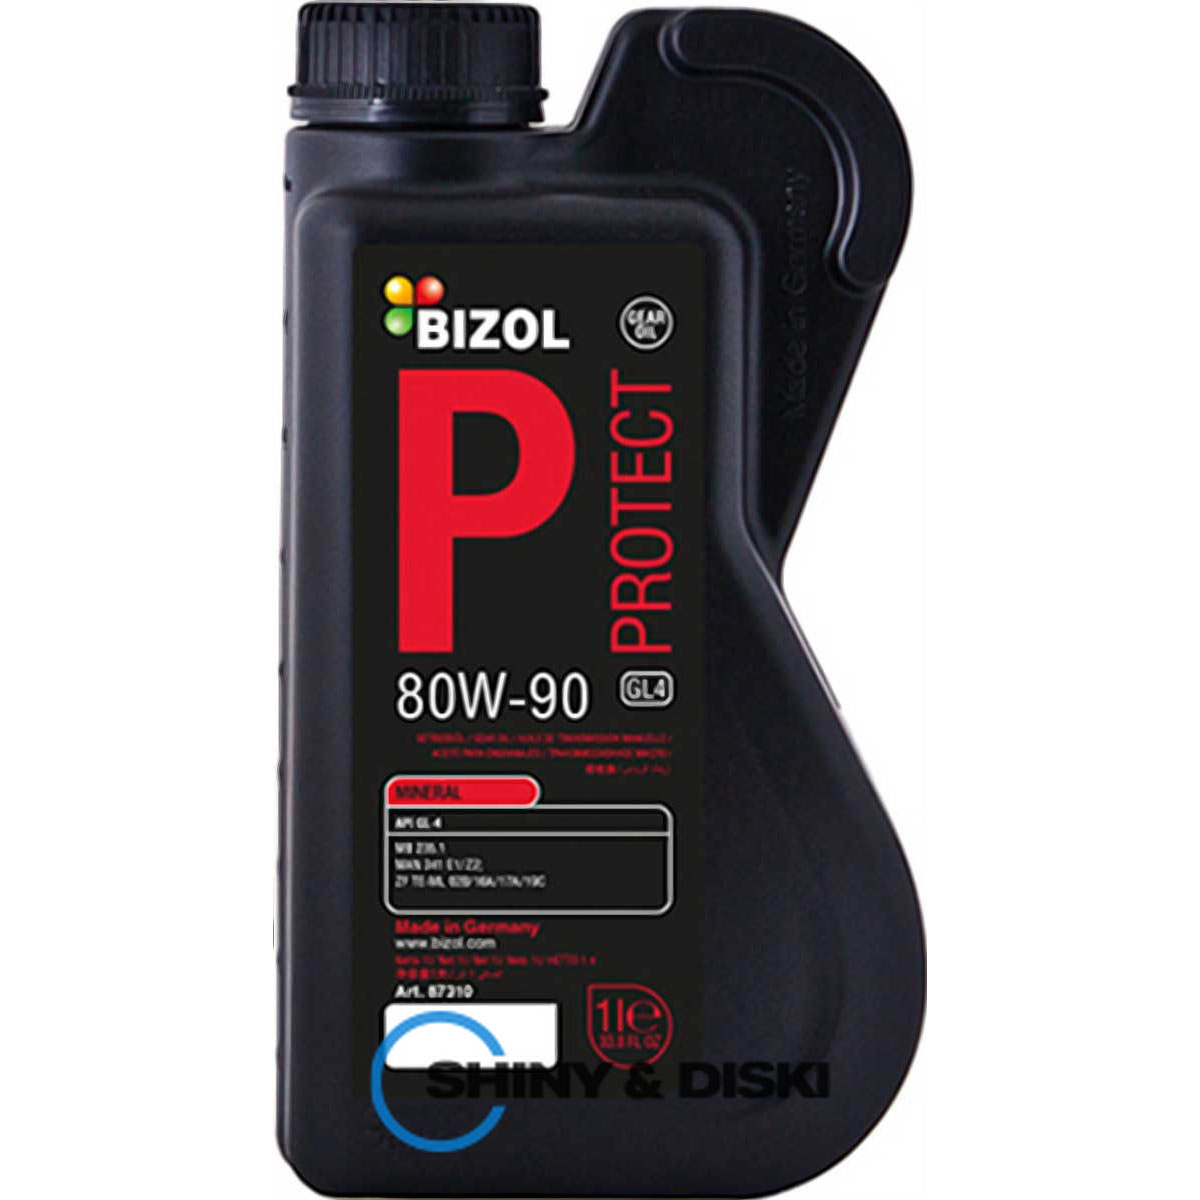 bizol protect gear oil gl4 80w-90 (1л)